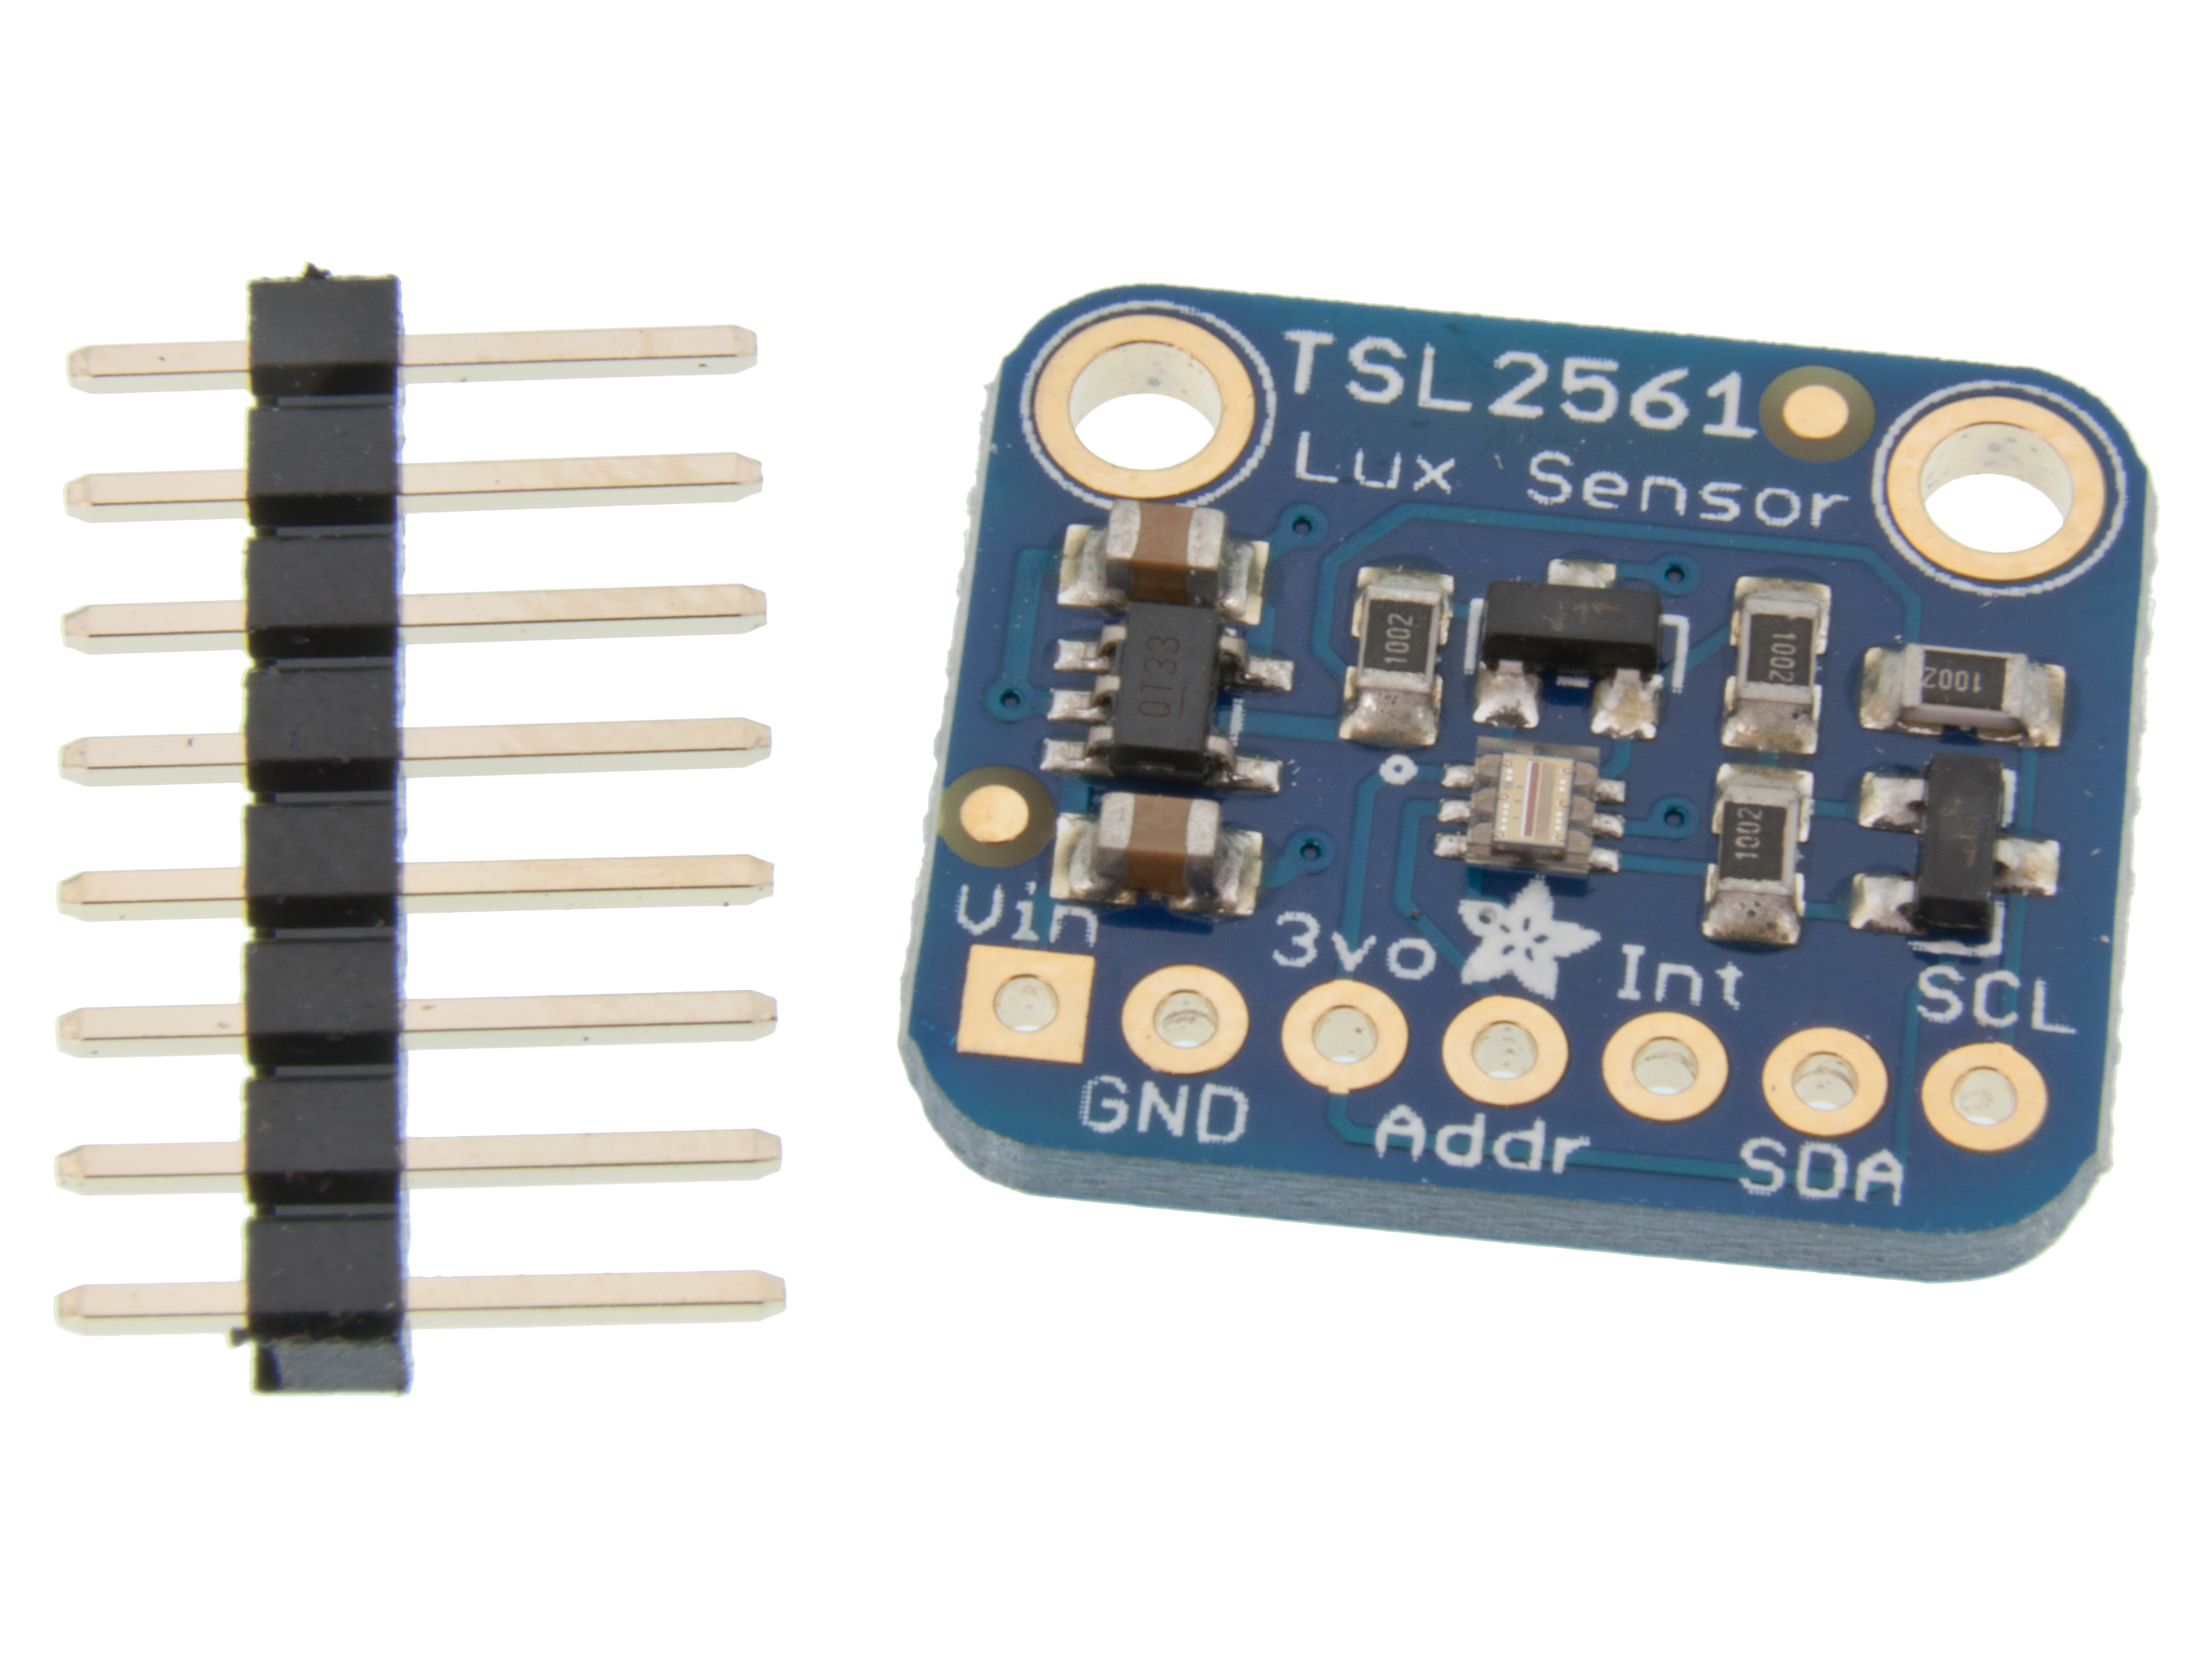 TSL2561 Digital ljussensor monterad på kort @ electrokit (1 av 2)